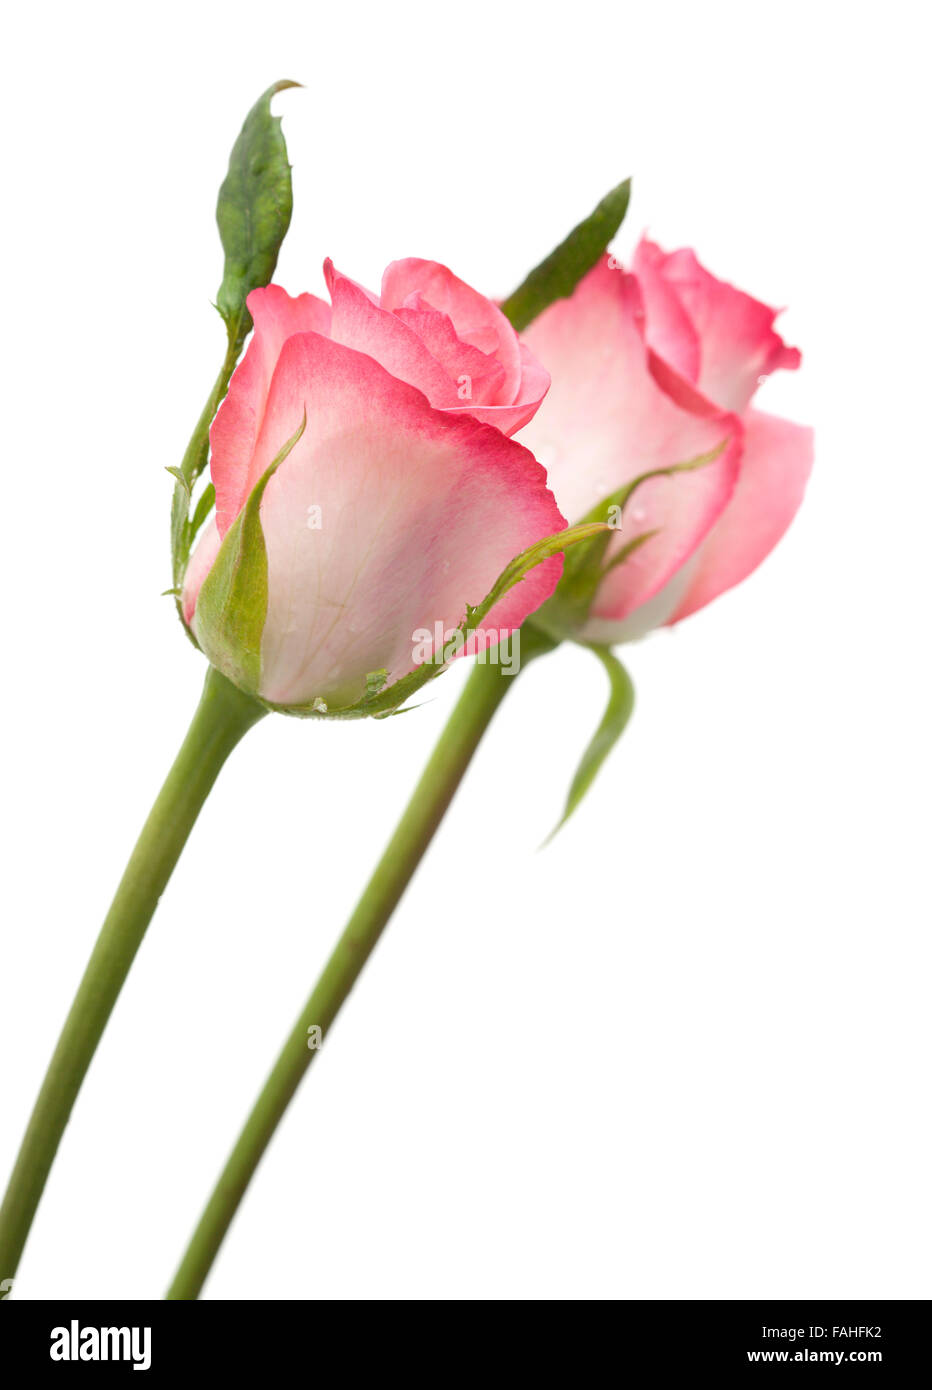 Dolce rosa rosa fiore isolato su sfondo bianco Foto Stock